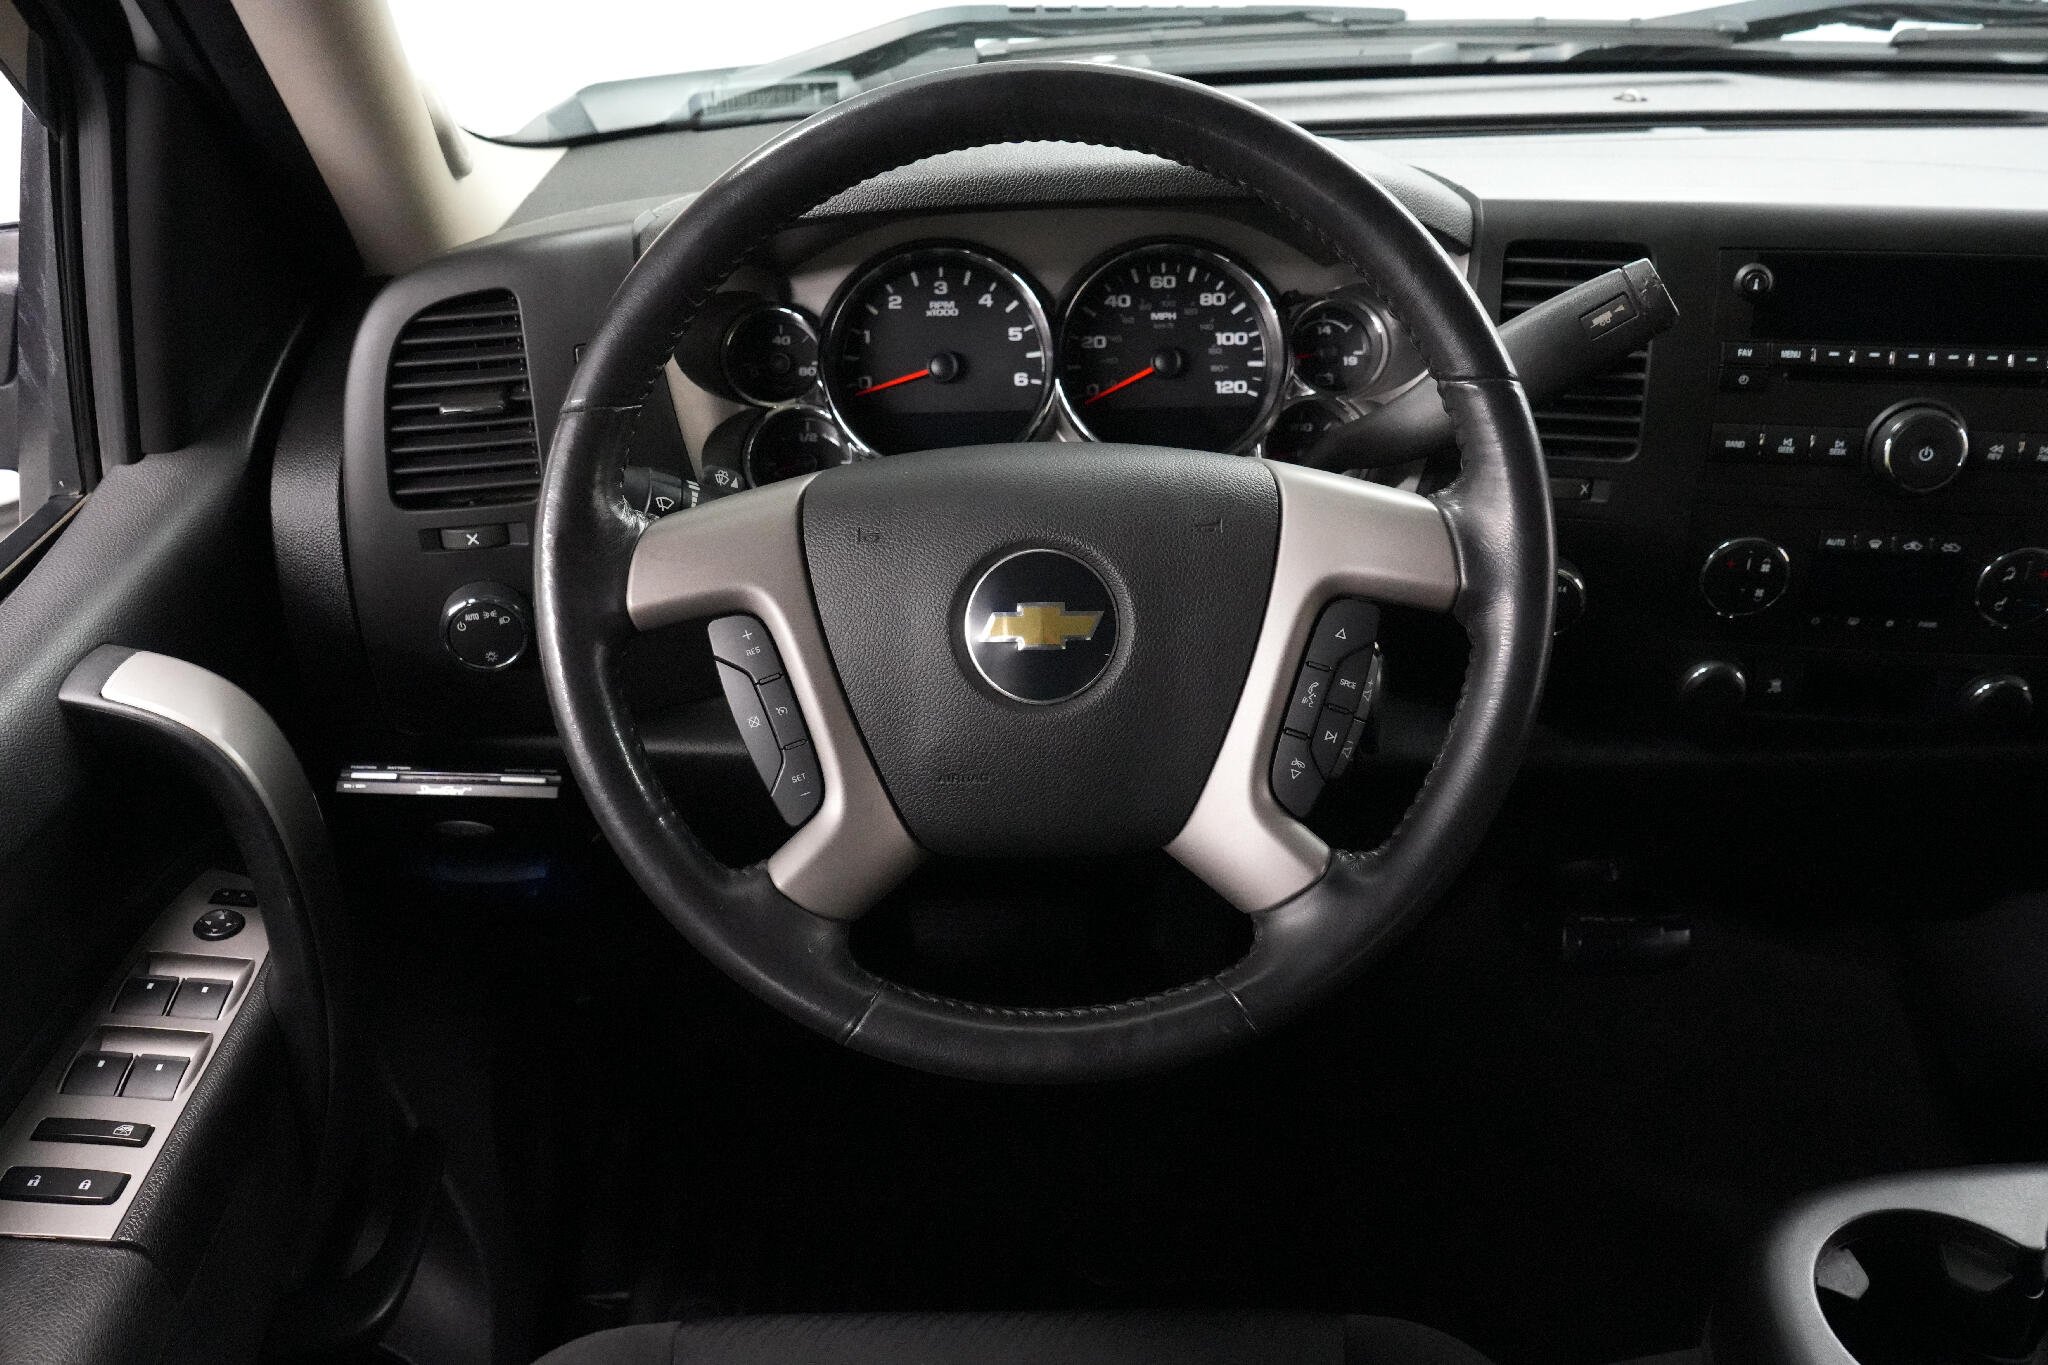 2011 Chevrolet Silverado 1500 40